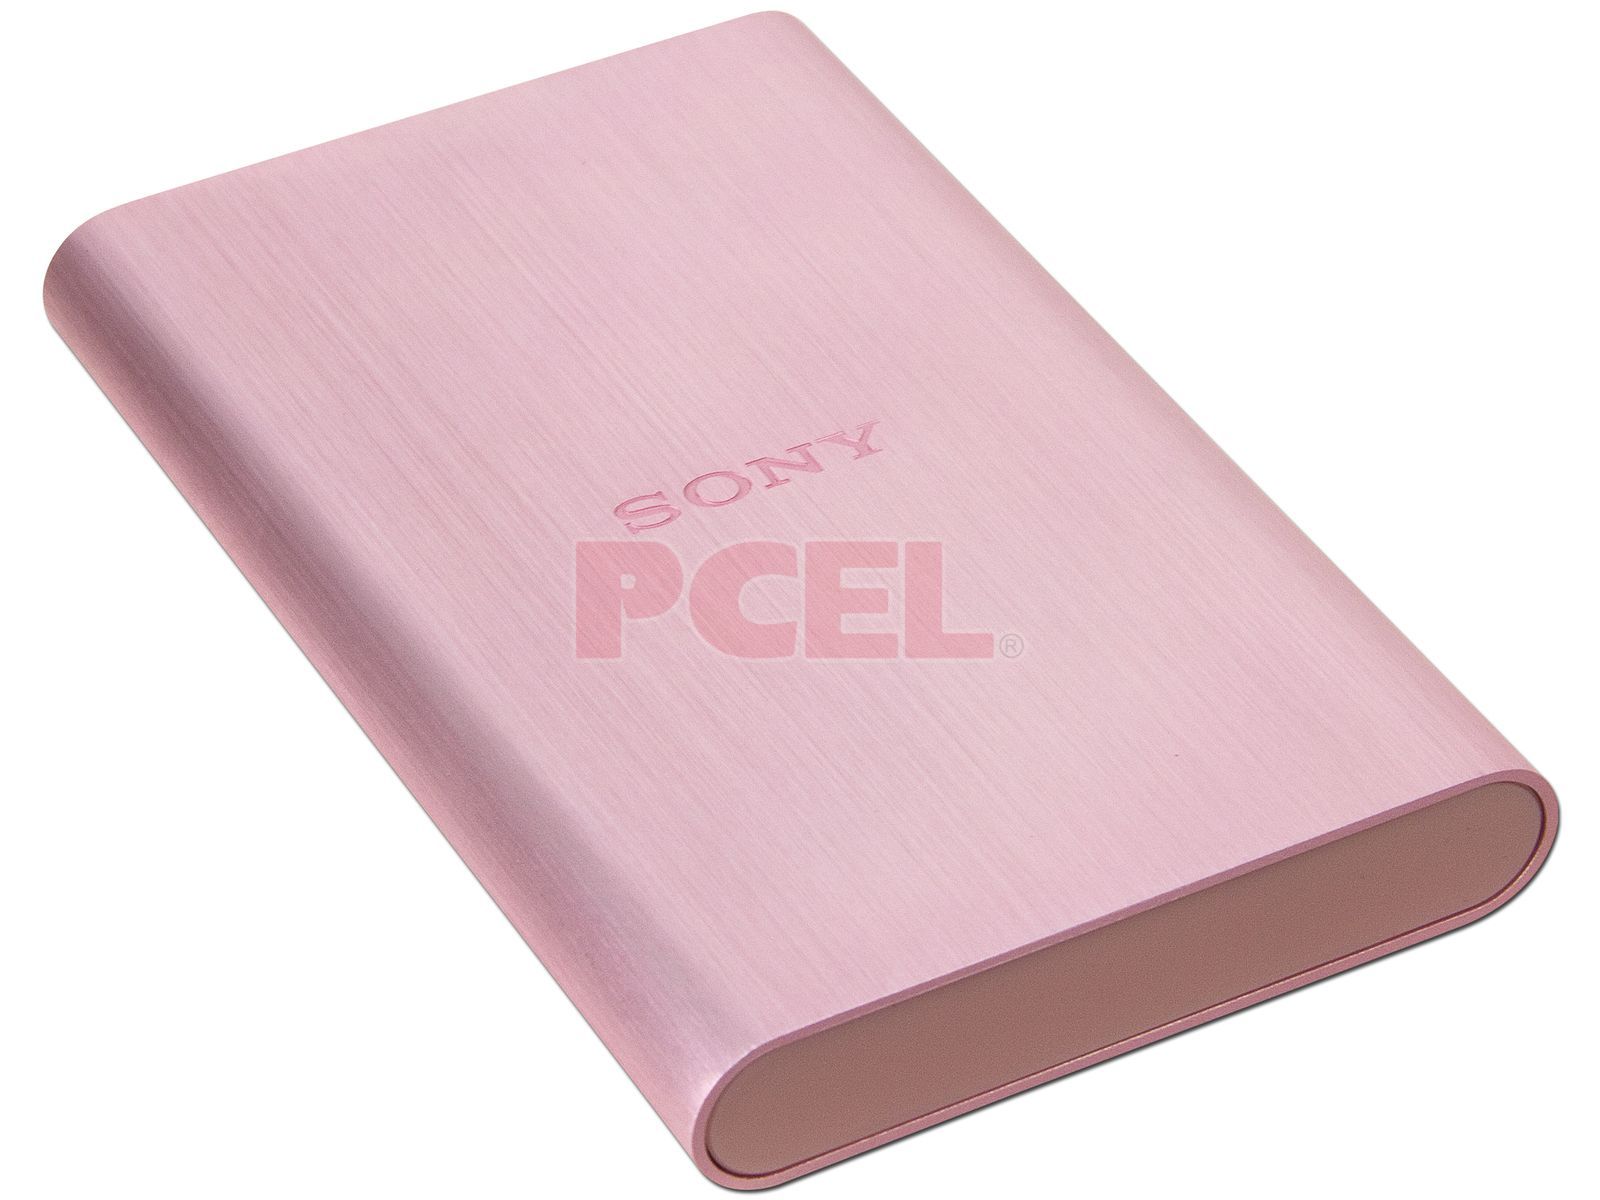 Disco Duro Sony de 500 GB, 3.0. Color Rosa.